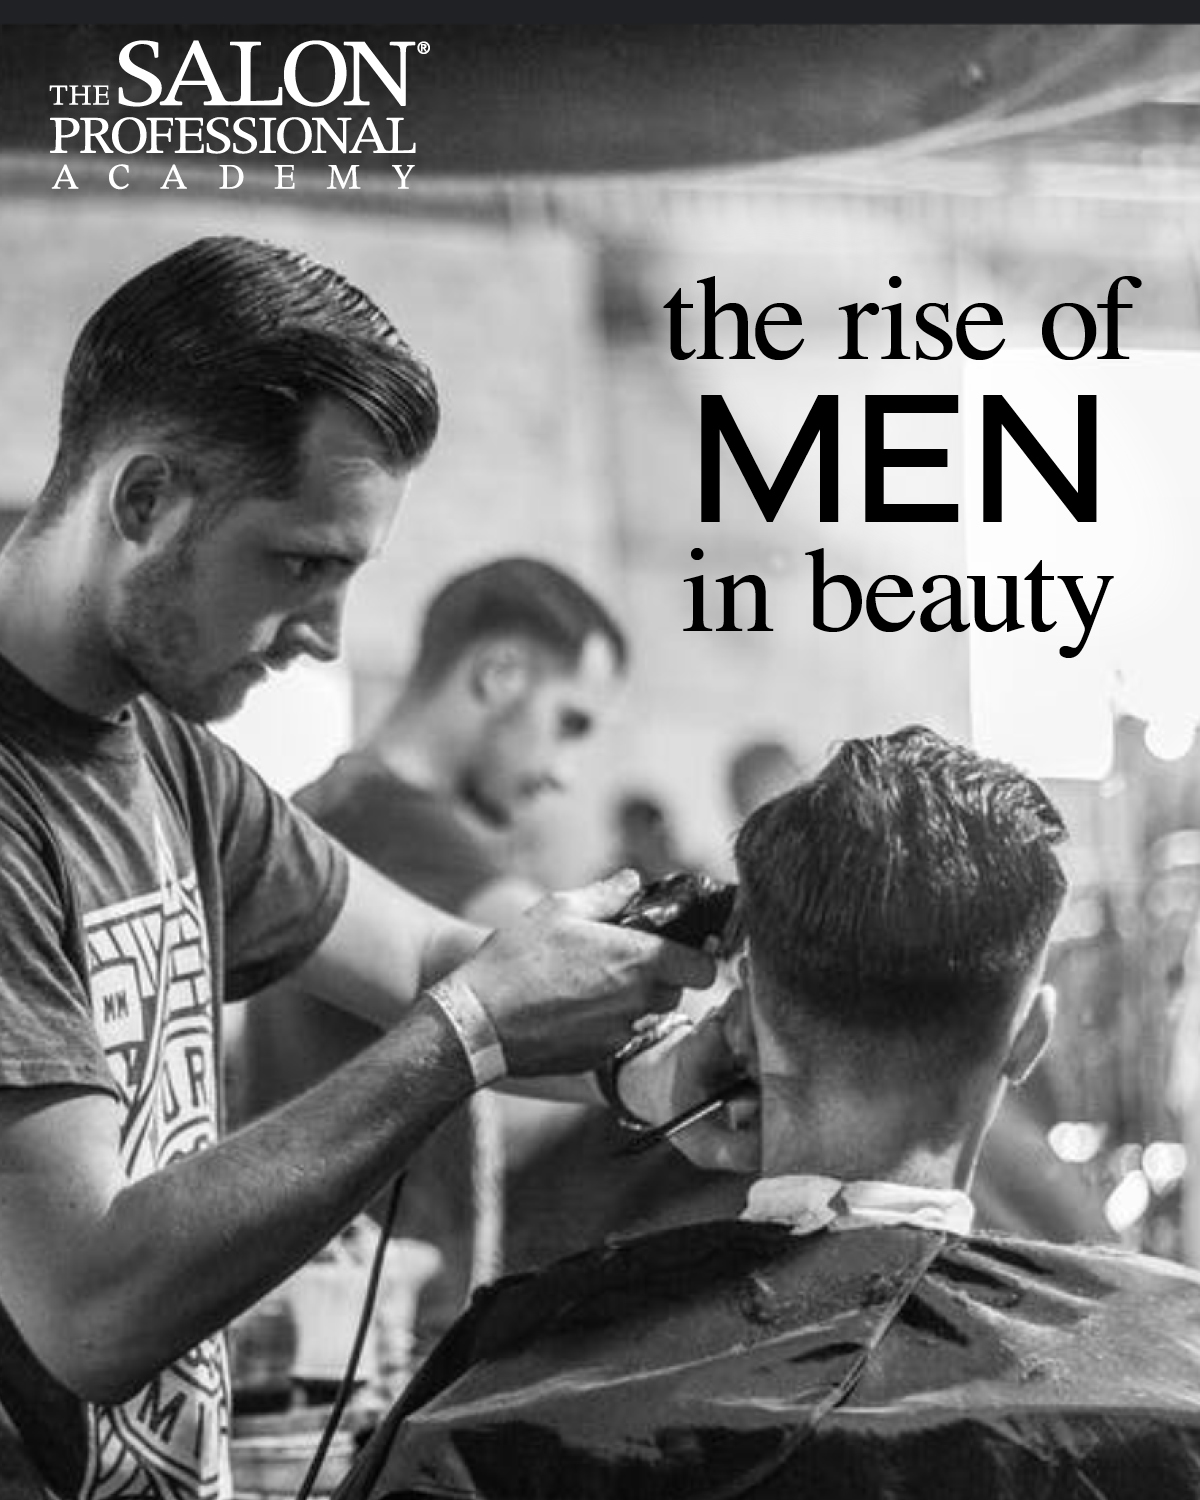 beauty schools for men